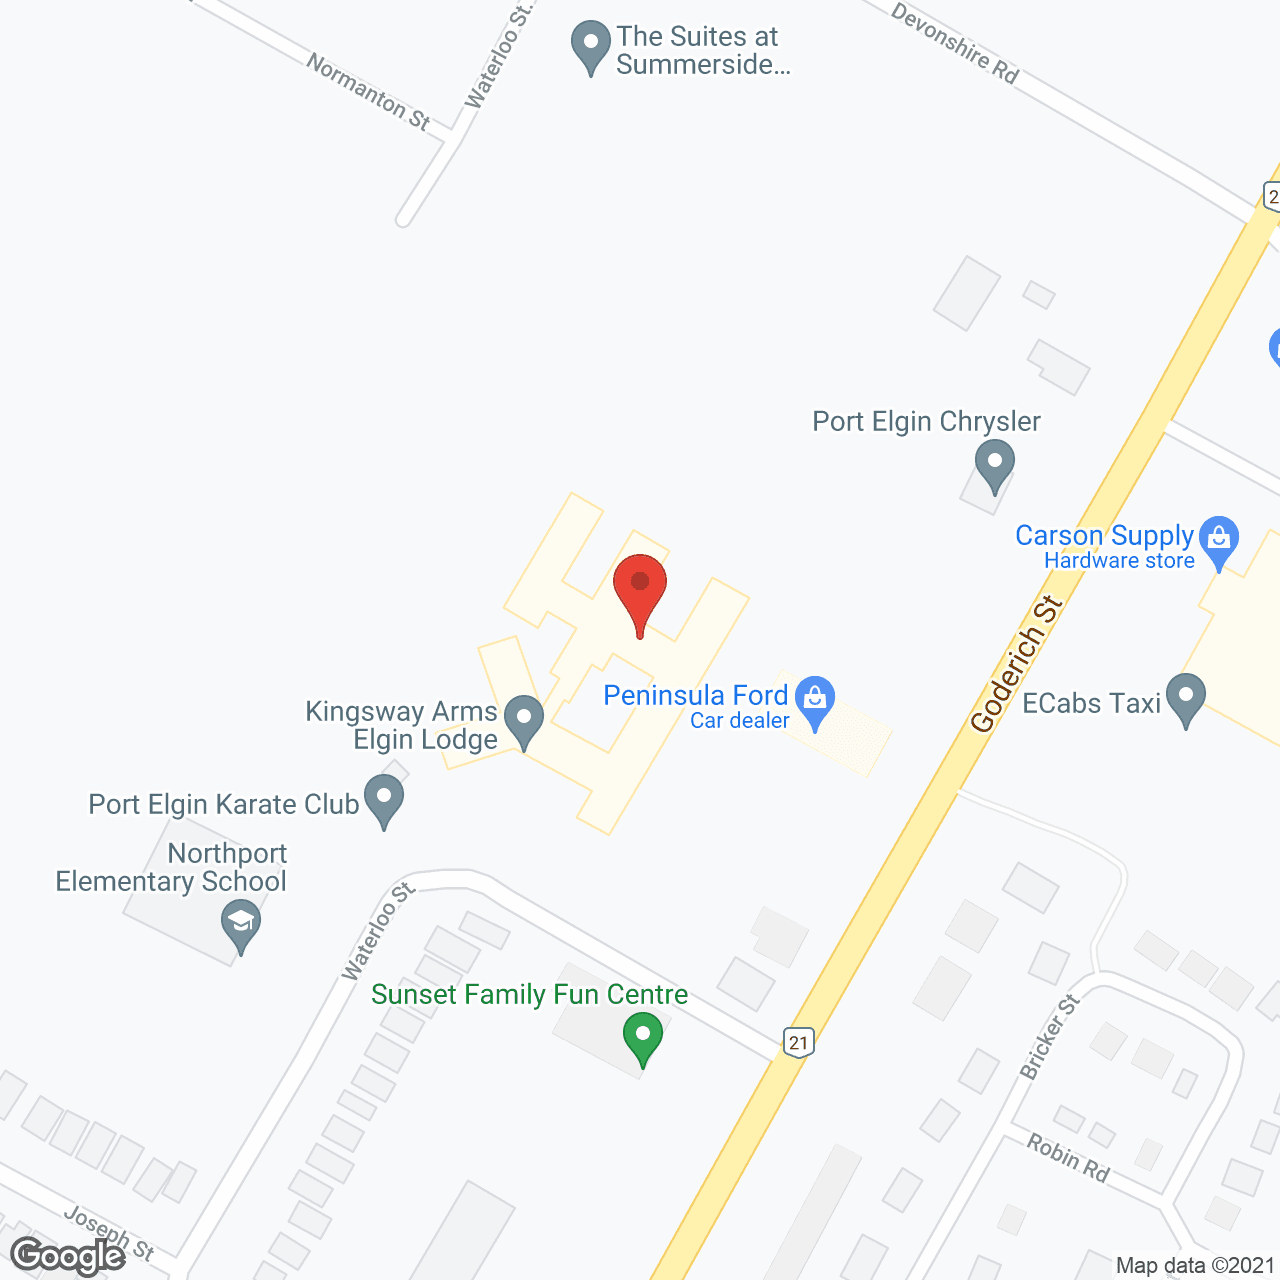 Kingsway Arms at Elgin Lodge in google map